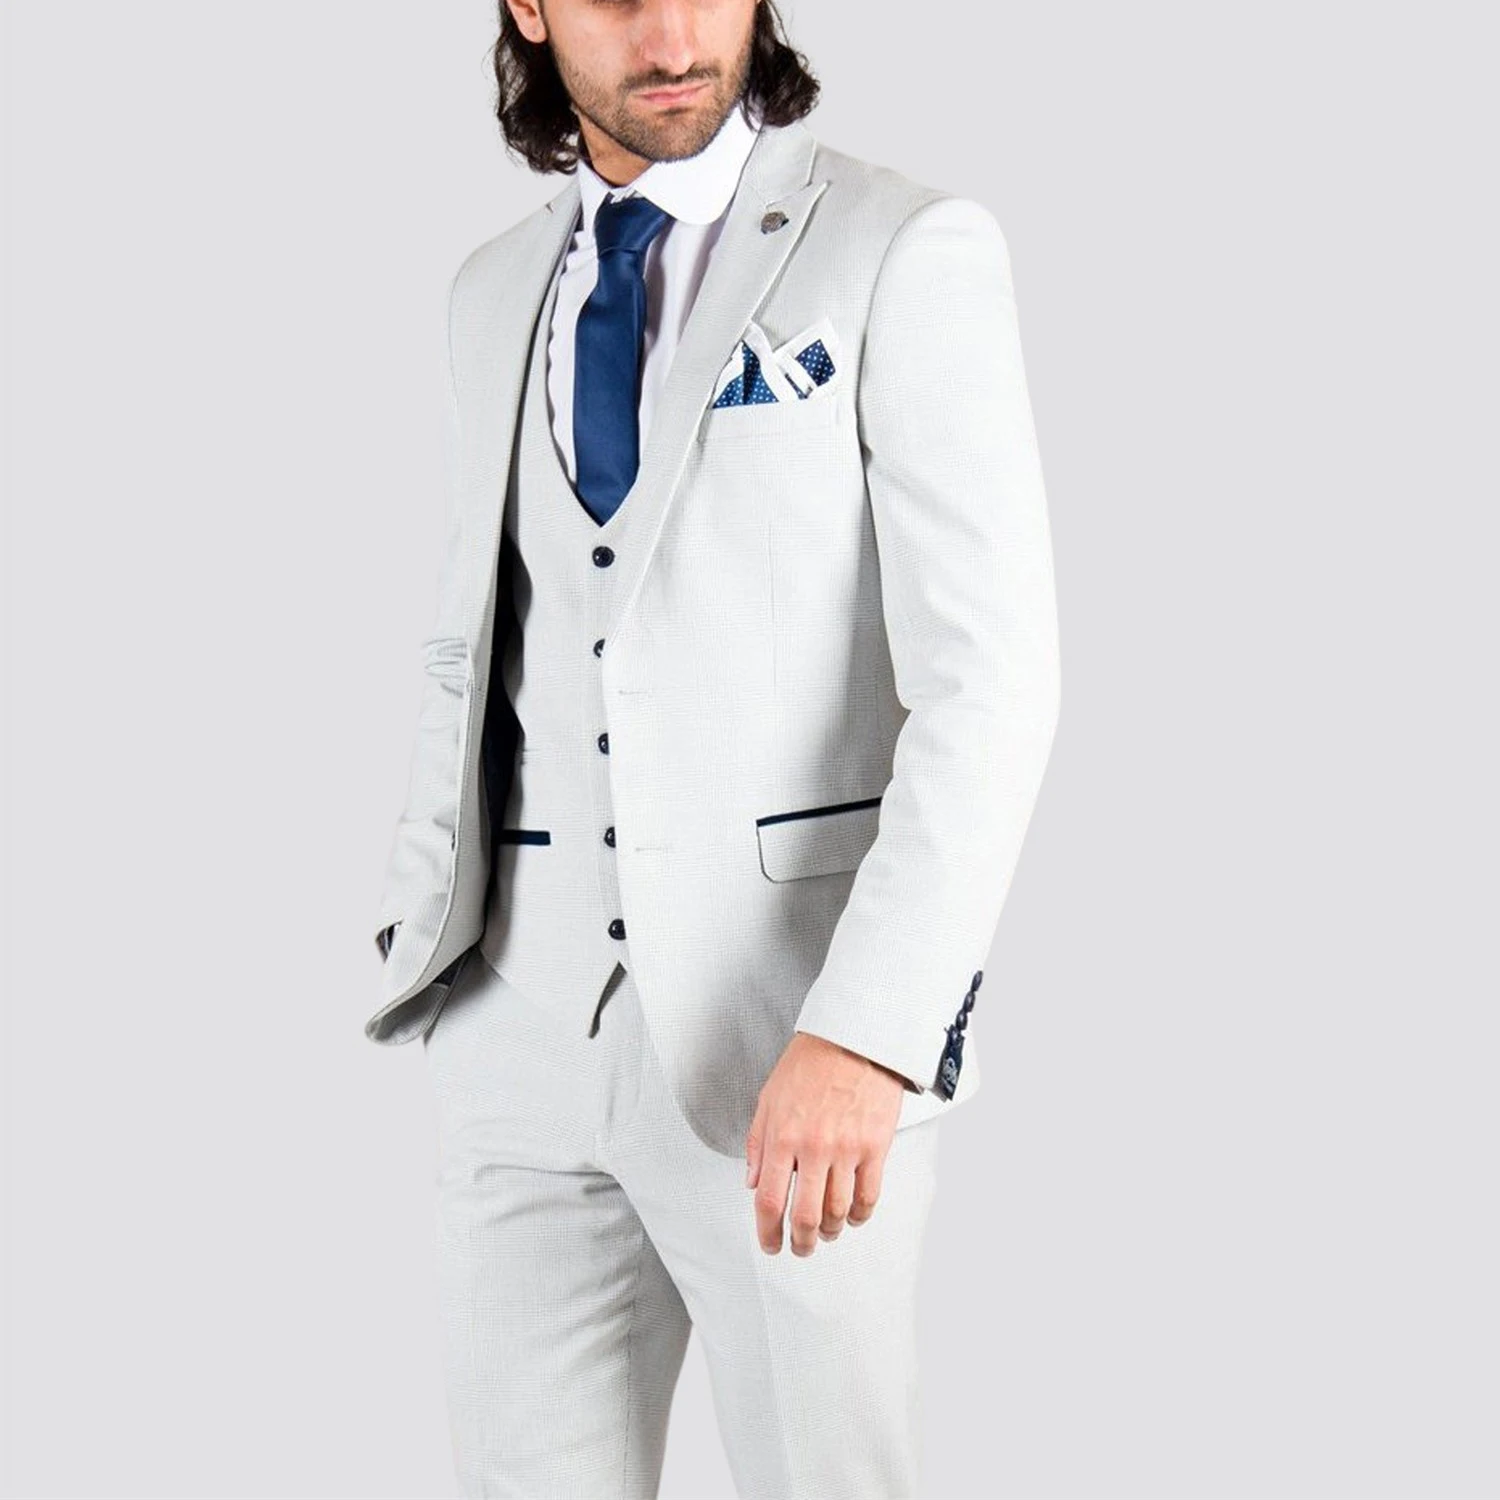 P.L.X Slim Fit Tuxedo Wedding Formalwear Suits Mens Suit Jackets Blazer Vest Pants Classic